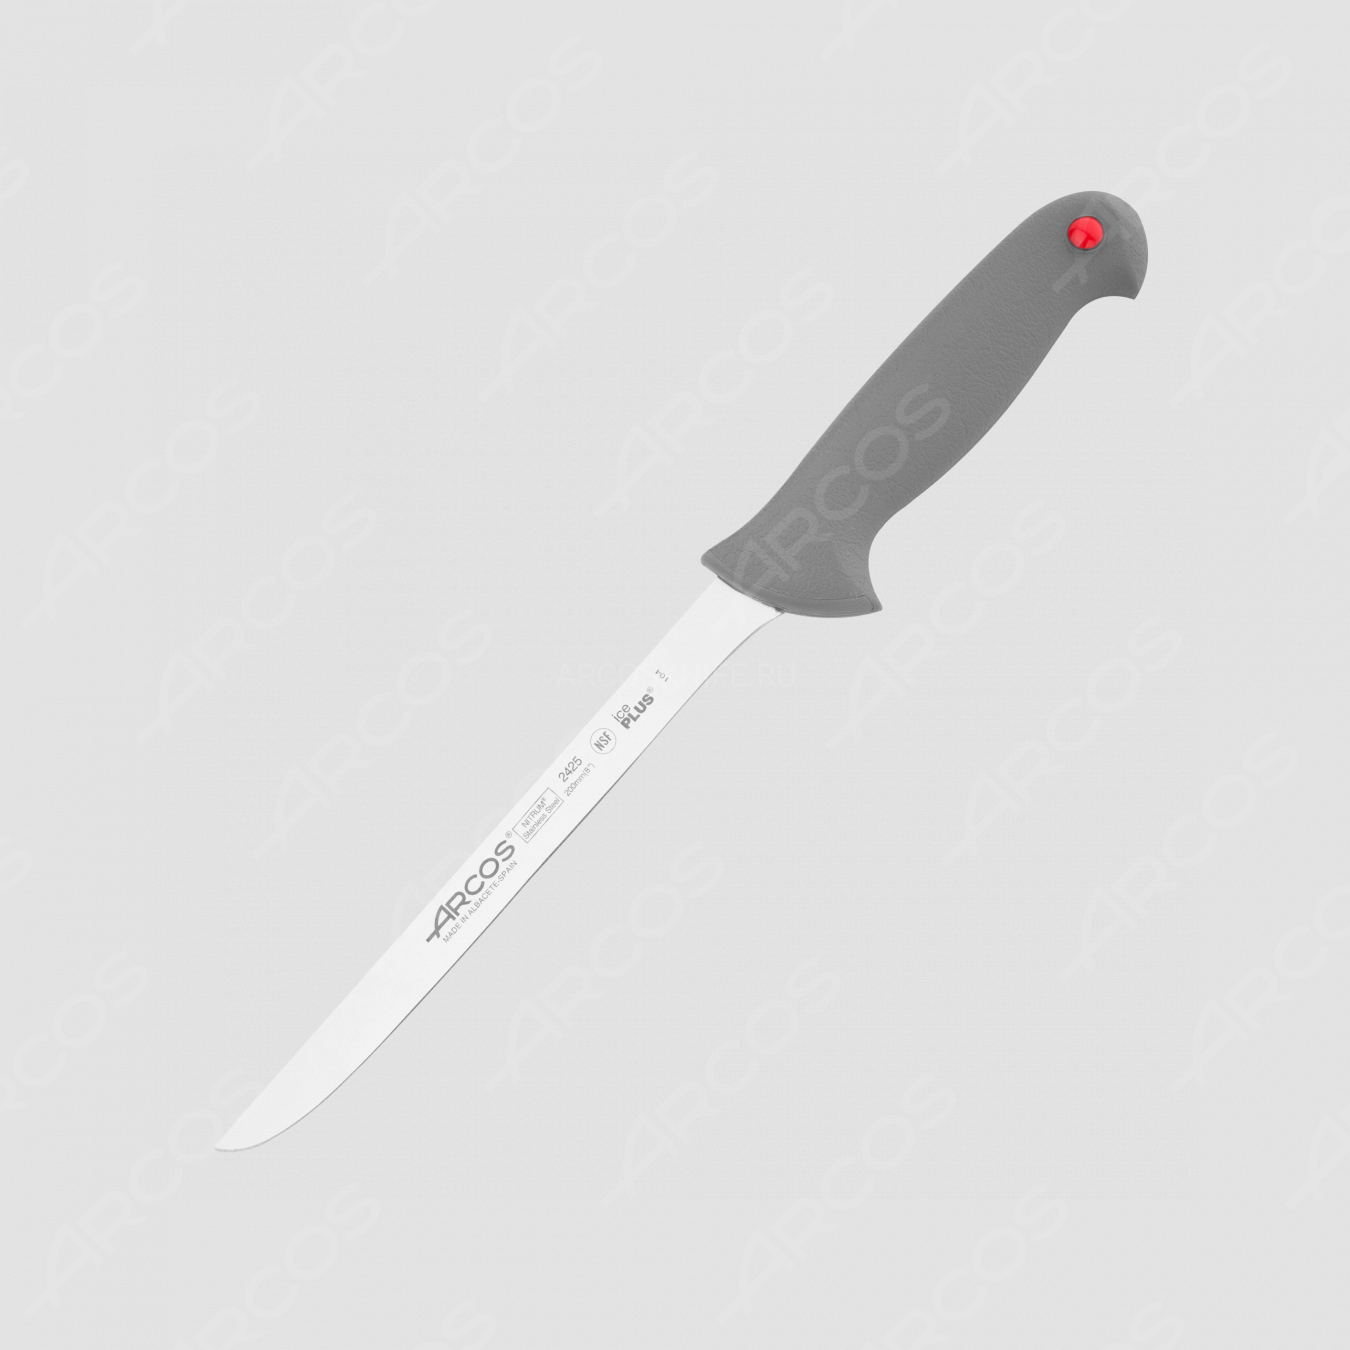 Нож кухонный для разделки филе 20 см, серия Colour-prof, ARCOS, Испания